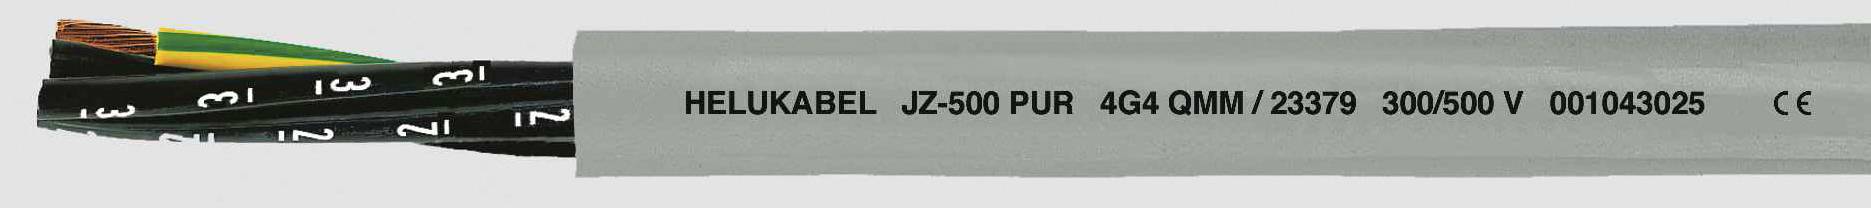 HELUKABEL JZ-500 PUR Steuerleitung 5 G 0.75 mm² Grau 23334 100 m